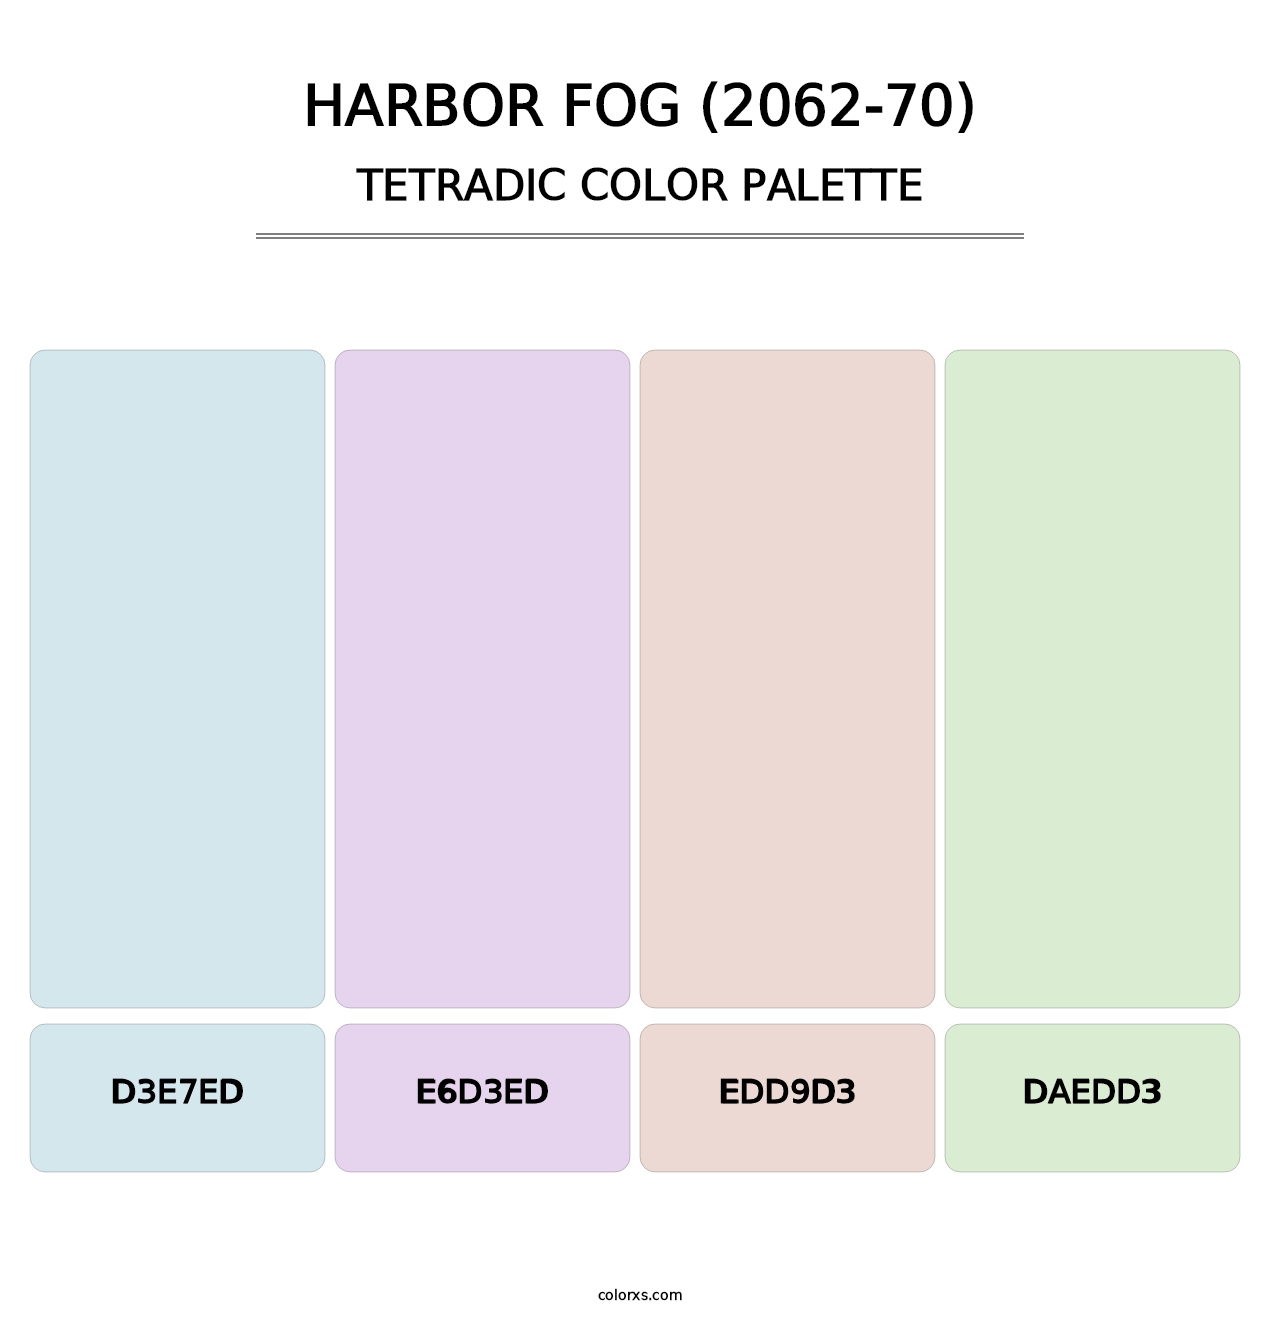 Harbor Fog (2062-70) - Tetradic Color Palette